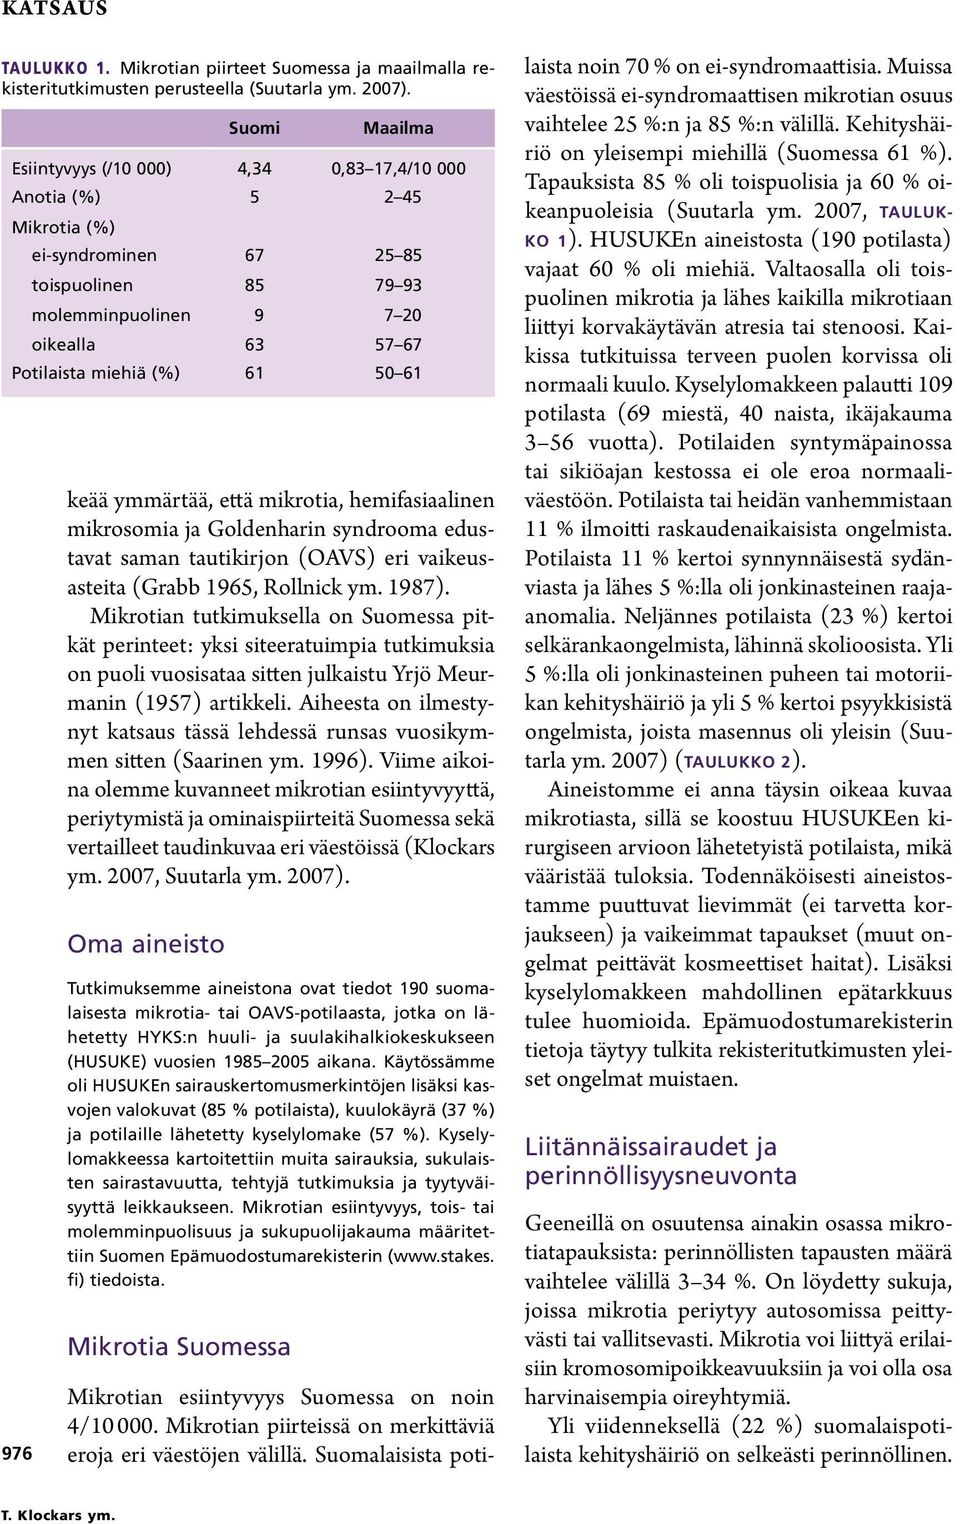 Mikrotian tutkimuksella on Suomessa pitkät perinteet: yksi siteeratuimpia tutkimuksia on puoli vuosisataa sitten julkaistu Yrjö Meurmanin (1957) artikkeli.